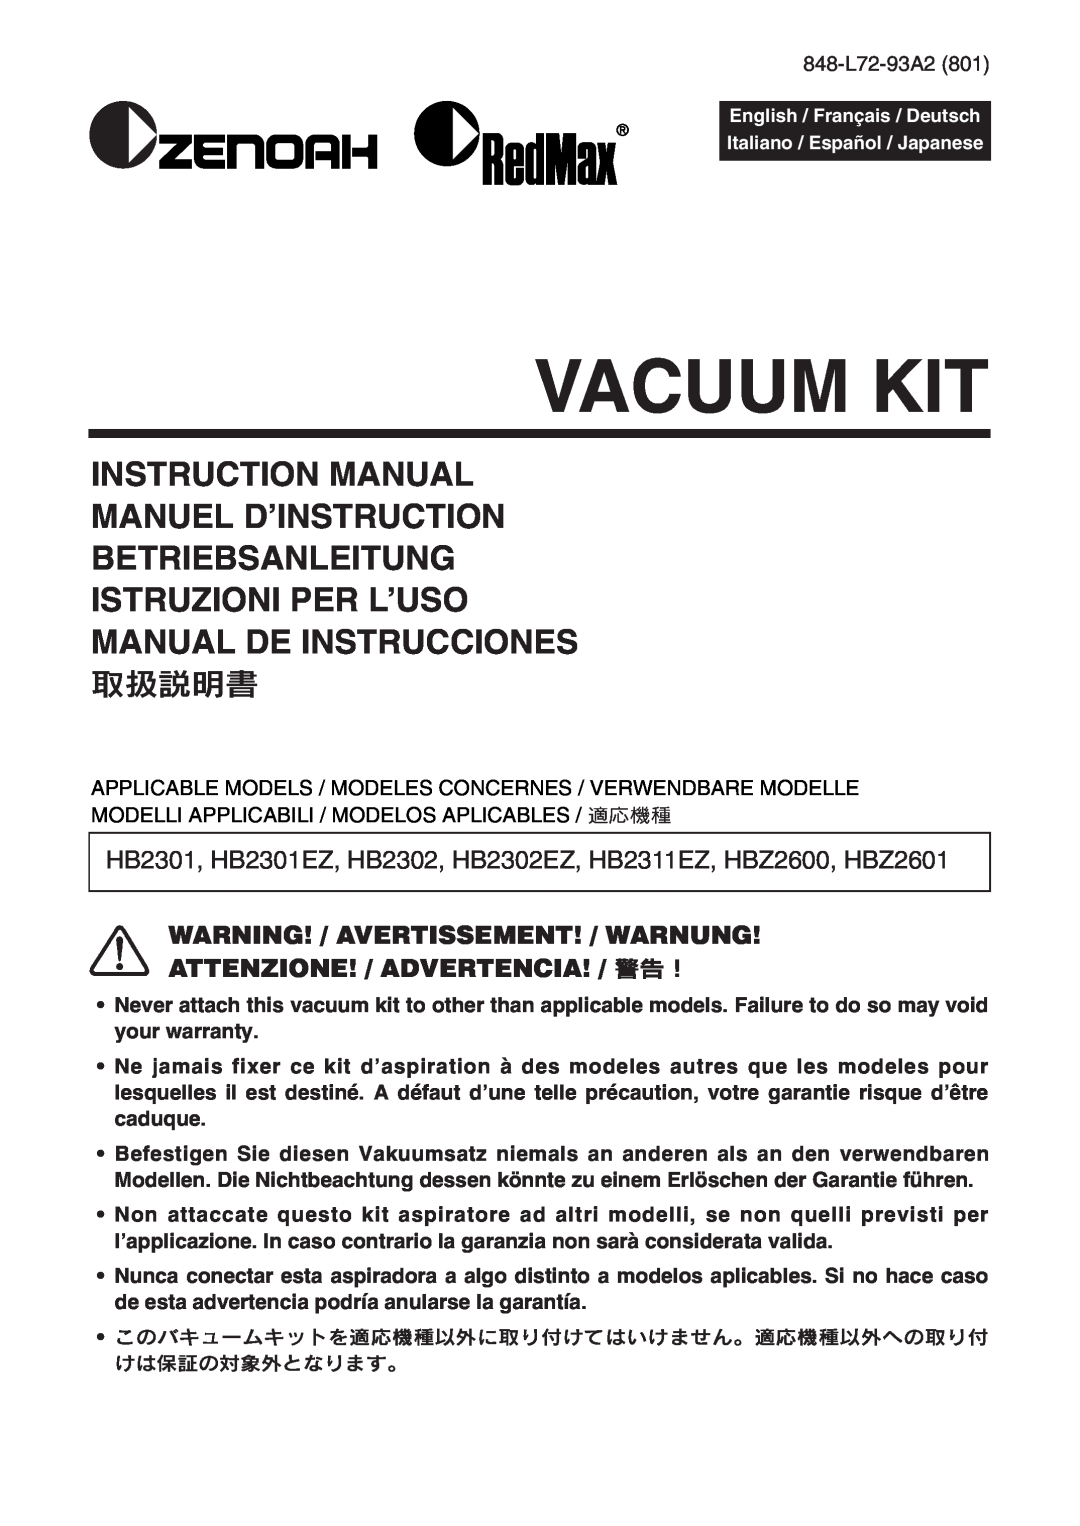 Zenoah HB2301, HB2311EZ warranty Vacuum Kit, Betriebsanleitung Istruzioni Per L’Uso, Manual De Instrucciones, 取扱説明書 